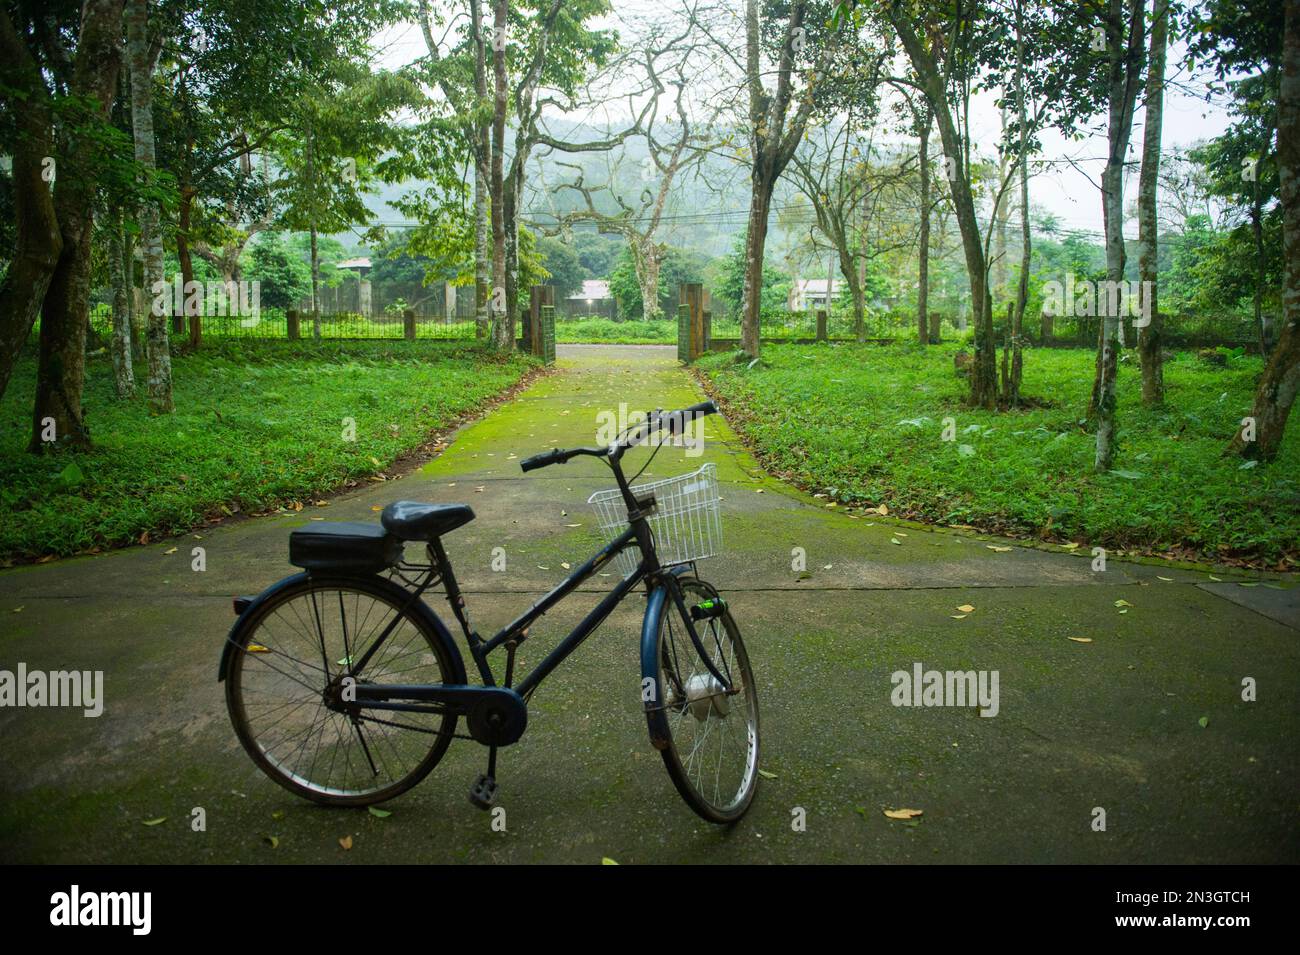 Ein Fahrrad steht auf einem moosbedeckten Bürgersteig in Vietnam im CUC Phuong Nationalpark; Vietnam Stockfoto